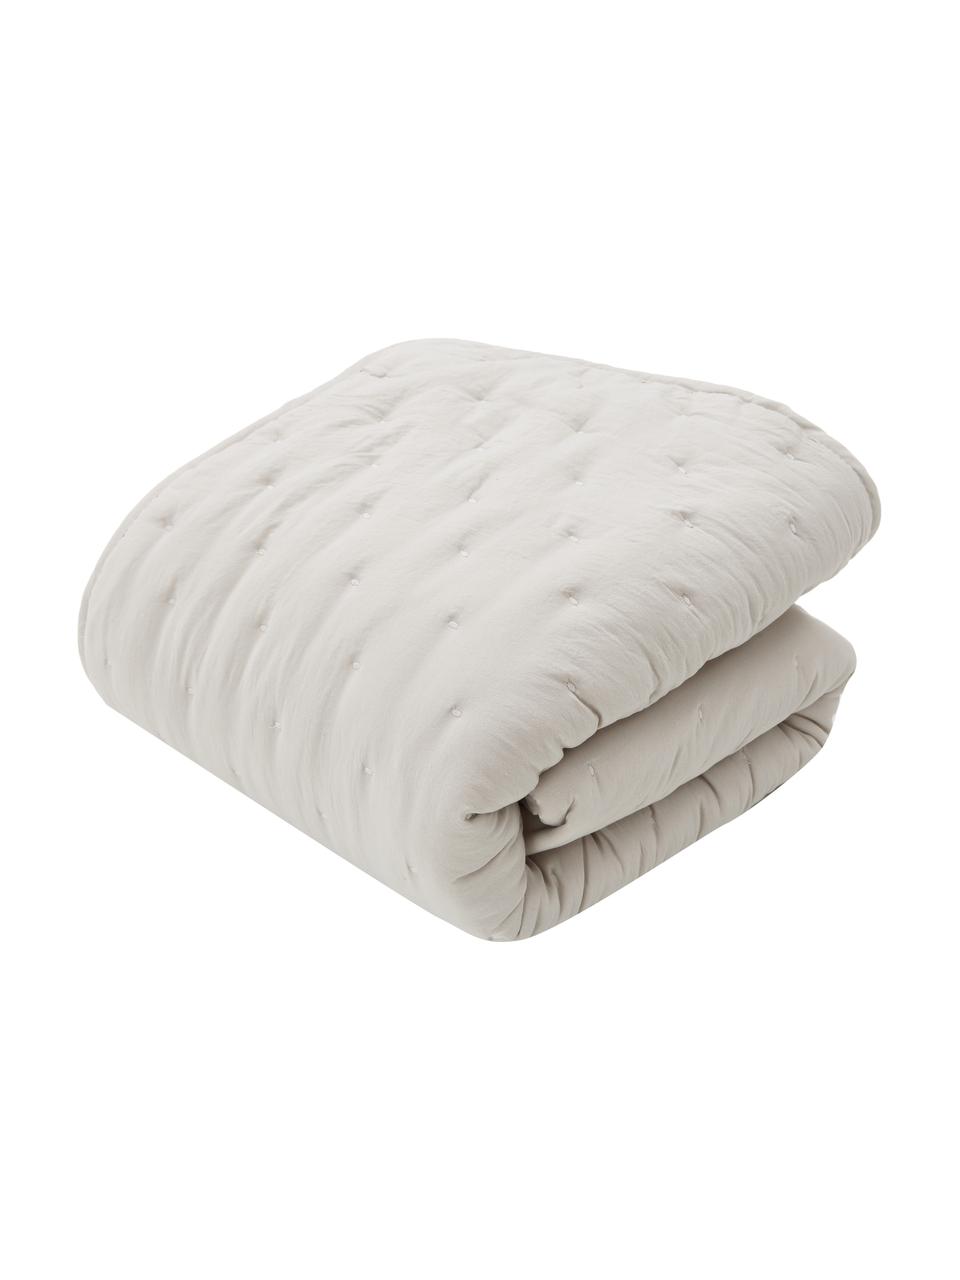 Couvre-lit blanc crème matelassé Wida, 100 % polyester, Blanc crème, larg. 260 x long. 260 cm (pour lits jusqu'à 200 x 200 cm)